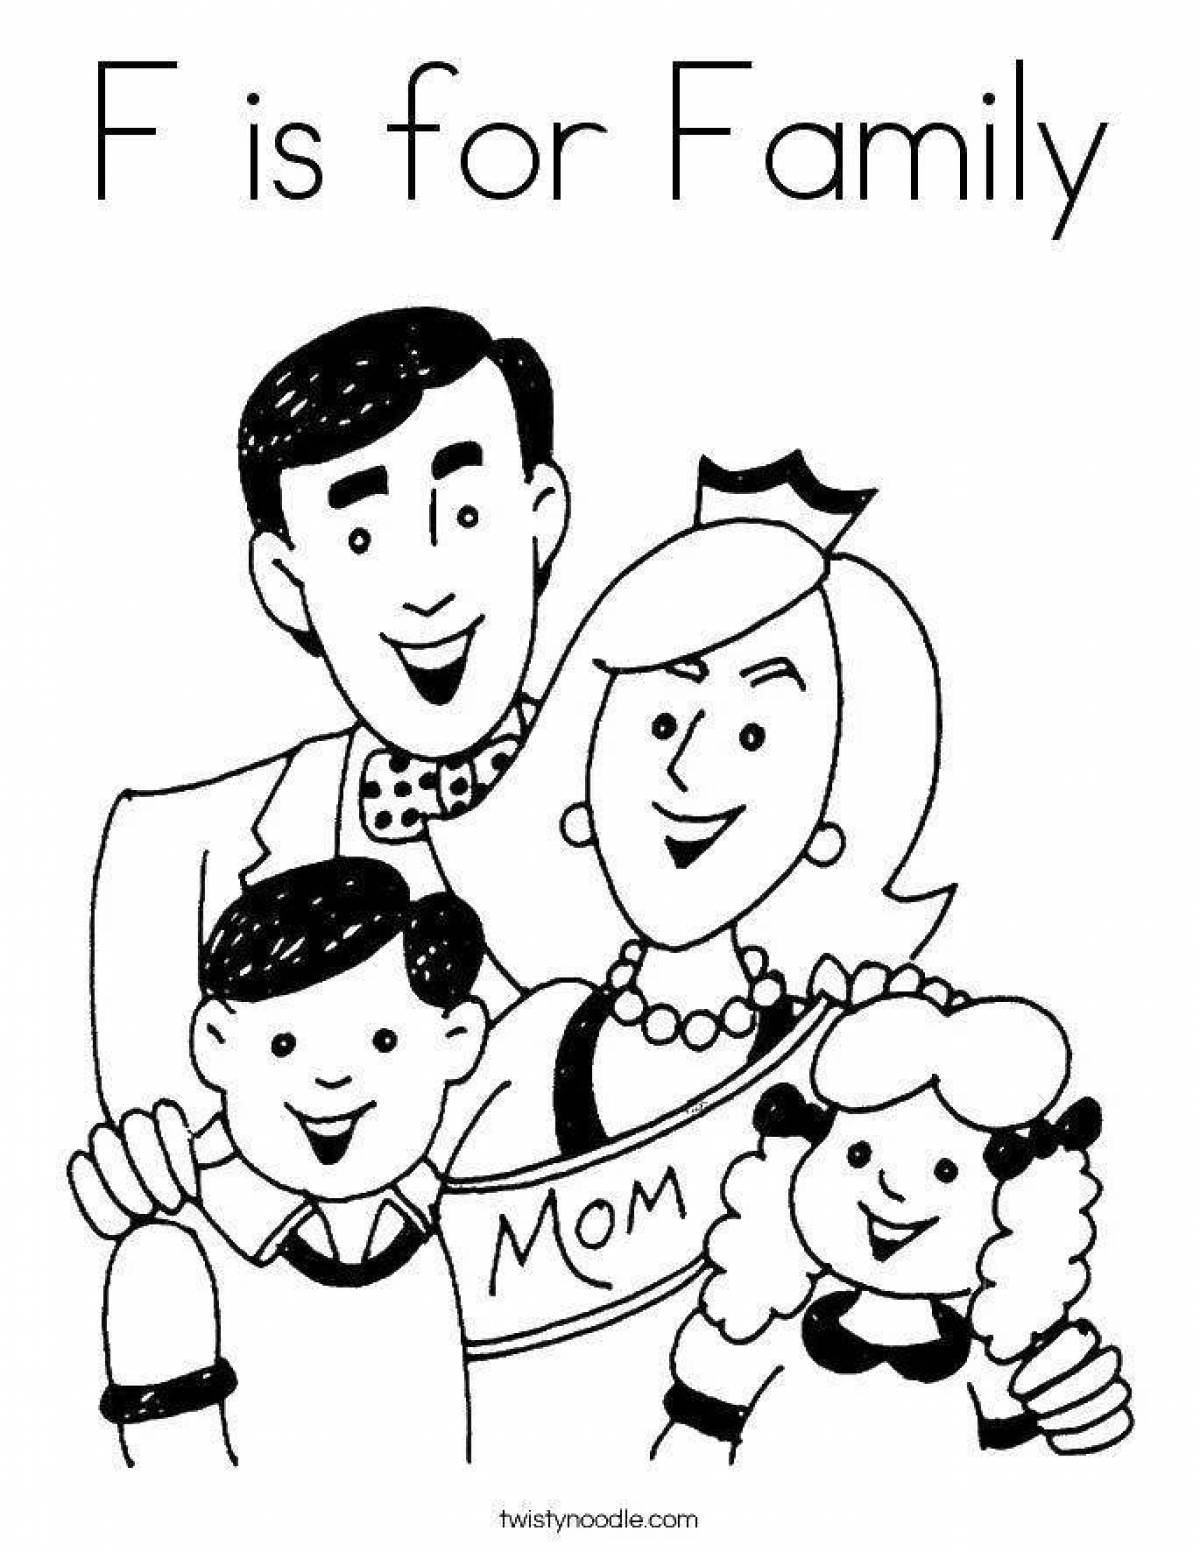 Caring family members coloring book